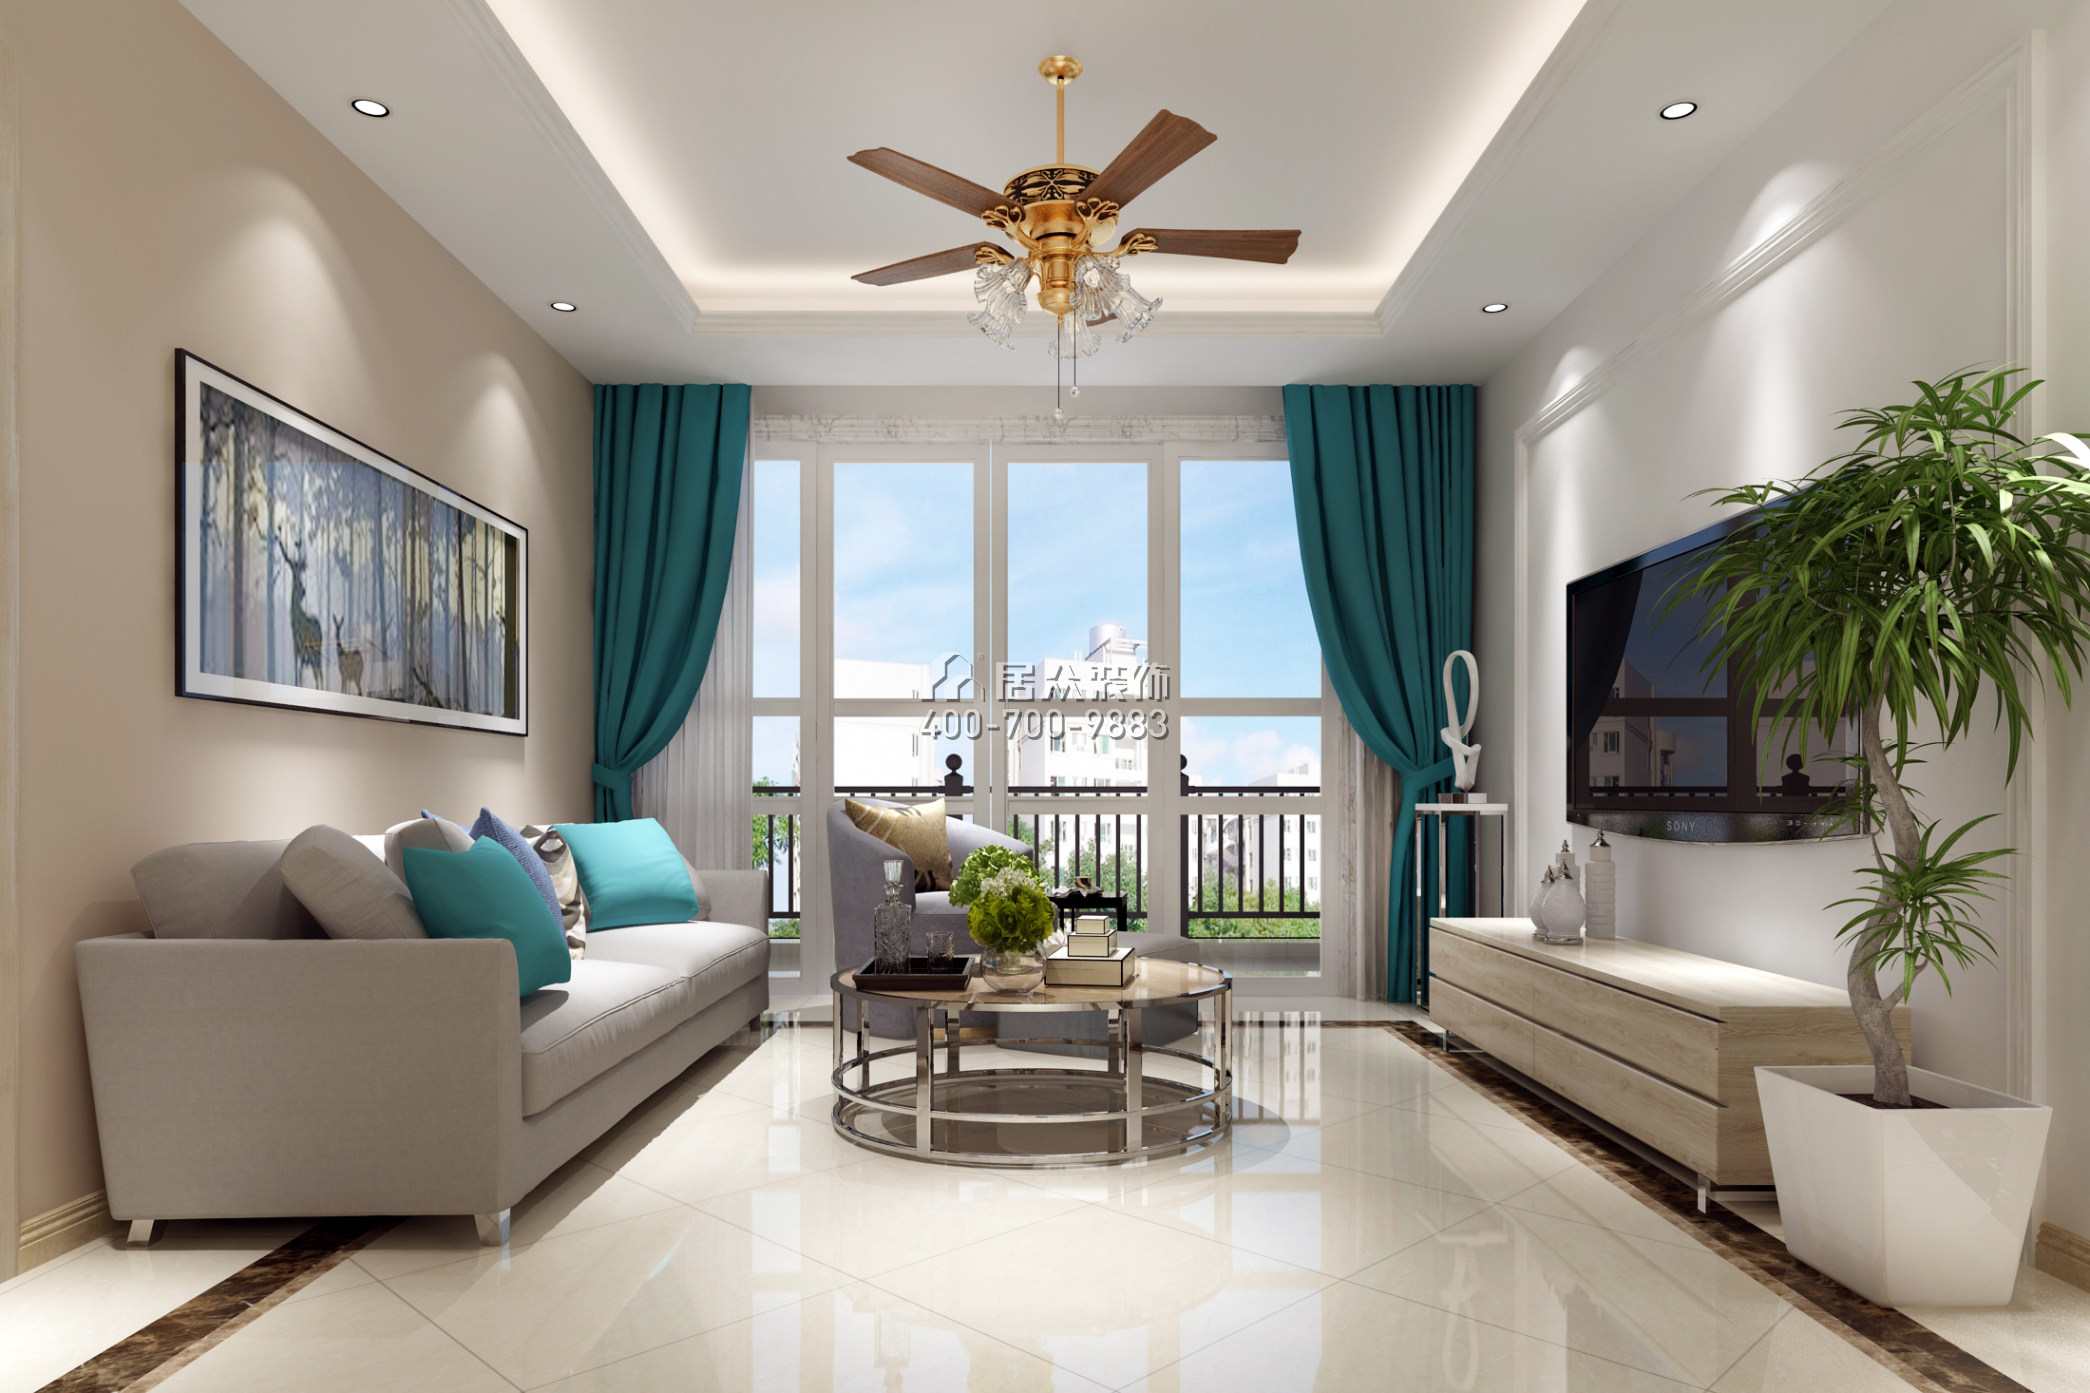 俊景豪園102平方米美式風格平層戶型客廳裝修效果圖